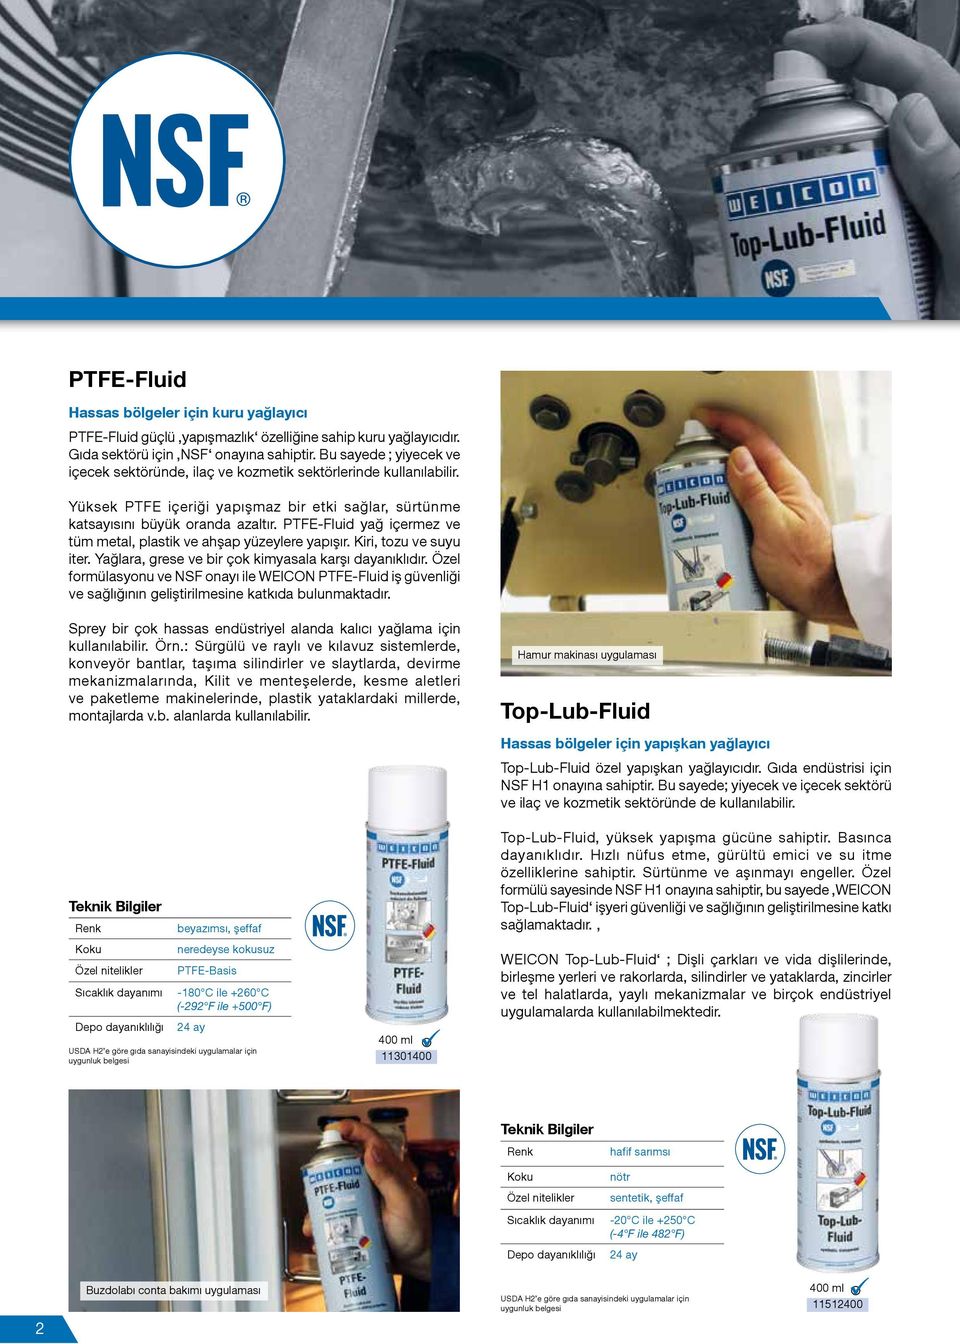 PTFE-Fluid yağ içermez ve tüm metal, plastik ve ahşap yüzeylere yapışır. Kiri, tozu ve suyu iter. Yağlara, grese ve bir çok kimyasala karşı dayanıklıdır.